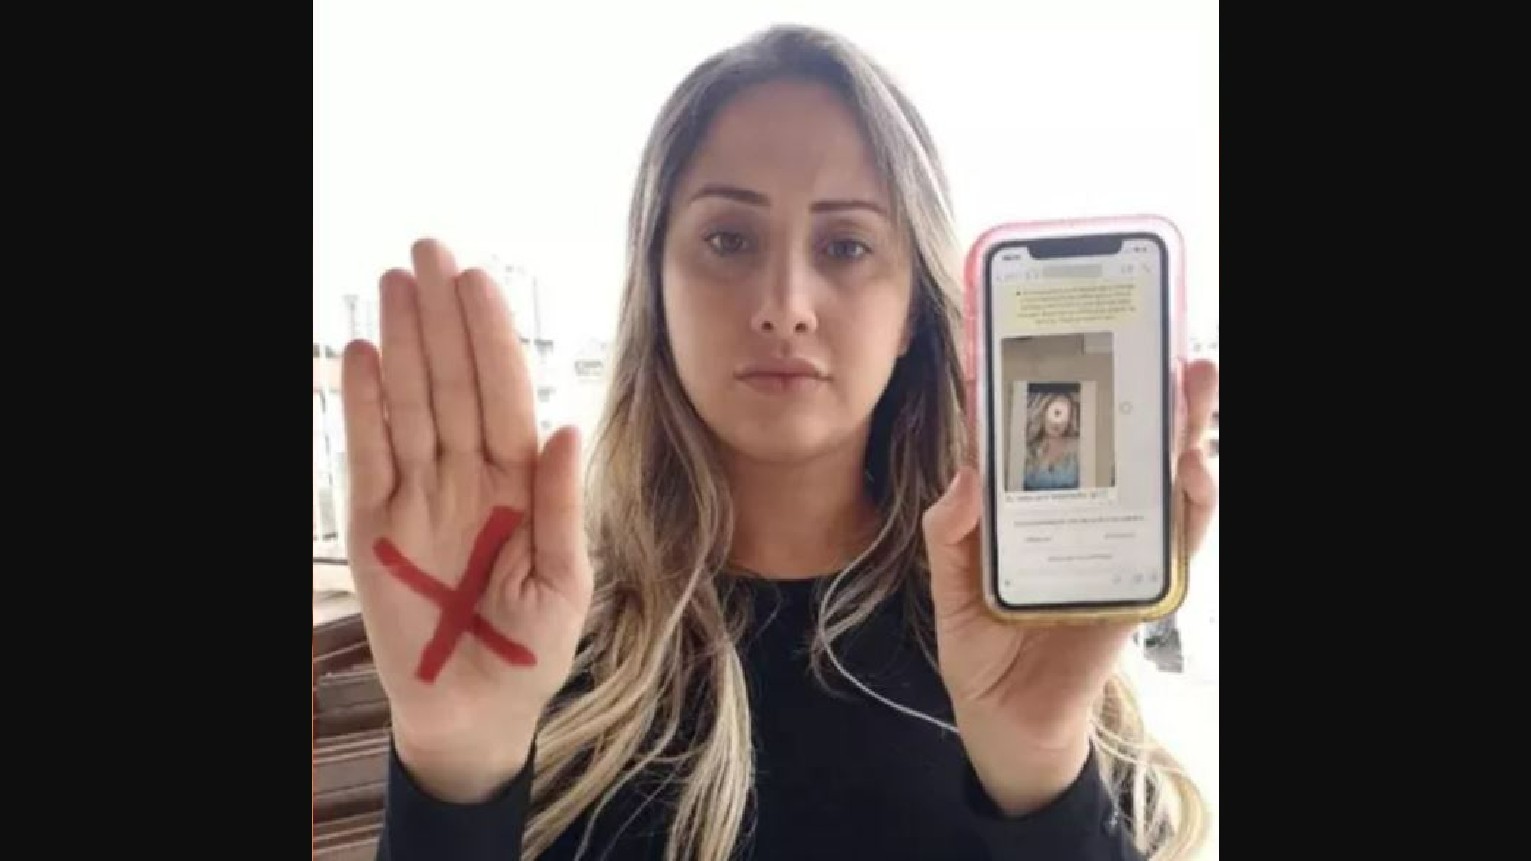 Vereadora fala sobre vídeo que recebeu de homem se masturbando: 'Sentimento de impotência'